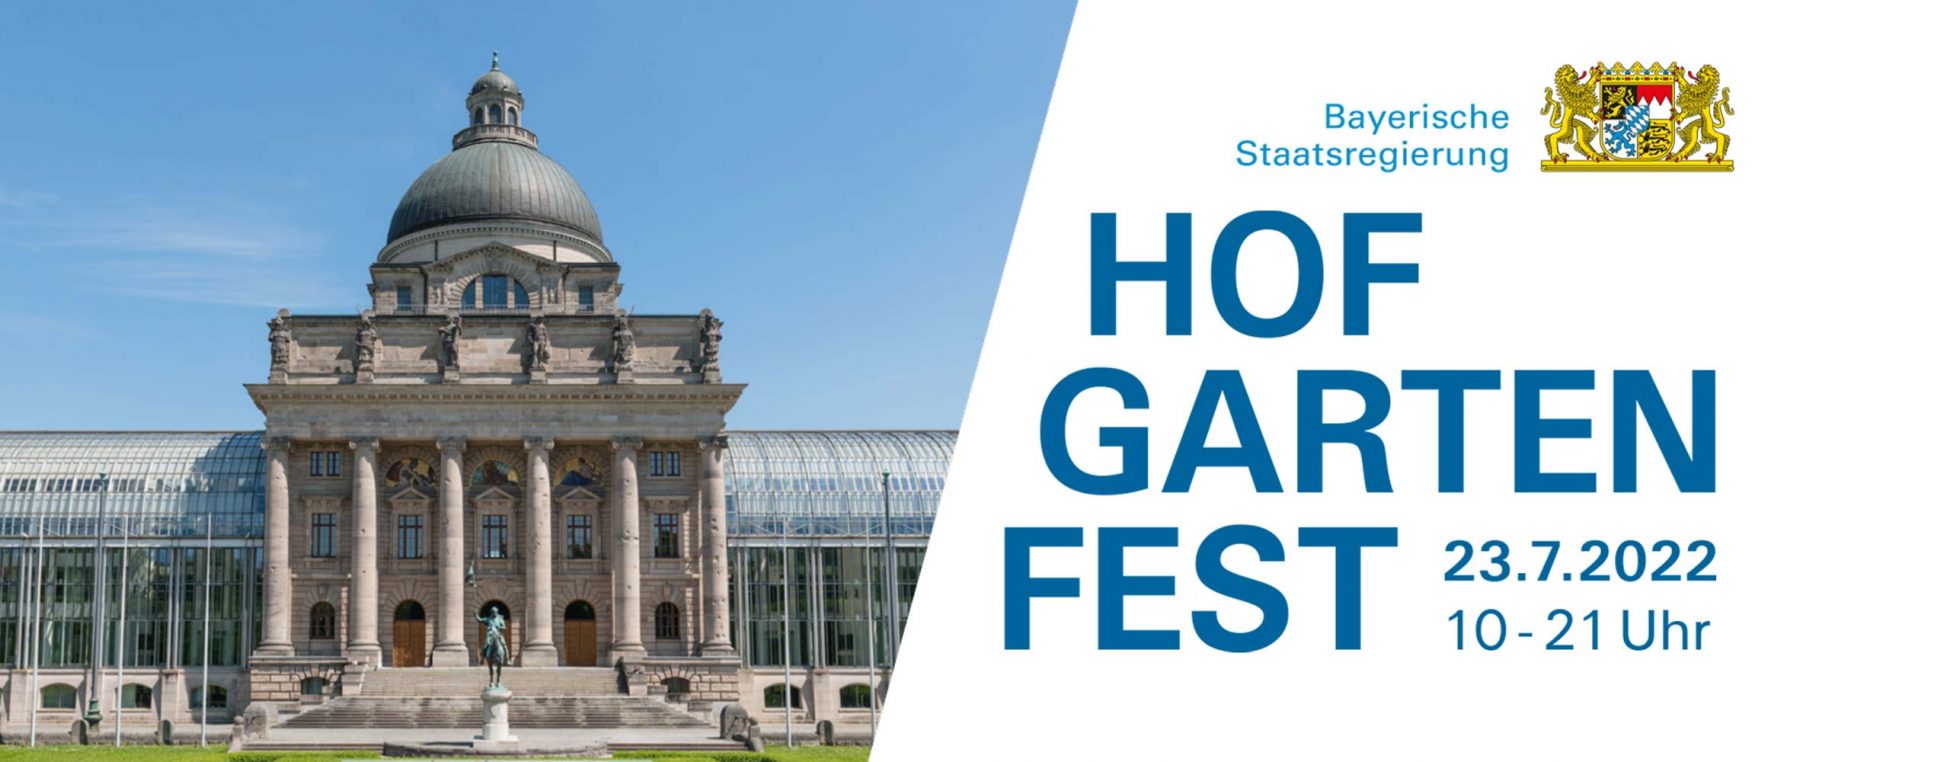 Bild der Bayerischen Staatskanzlei: Hofgartenfest am 23. Juli 2022 10 bis 21 Uhr